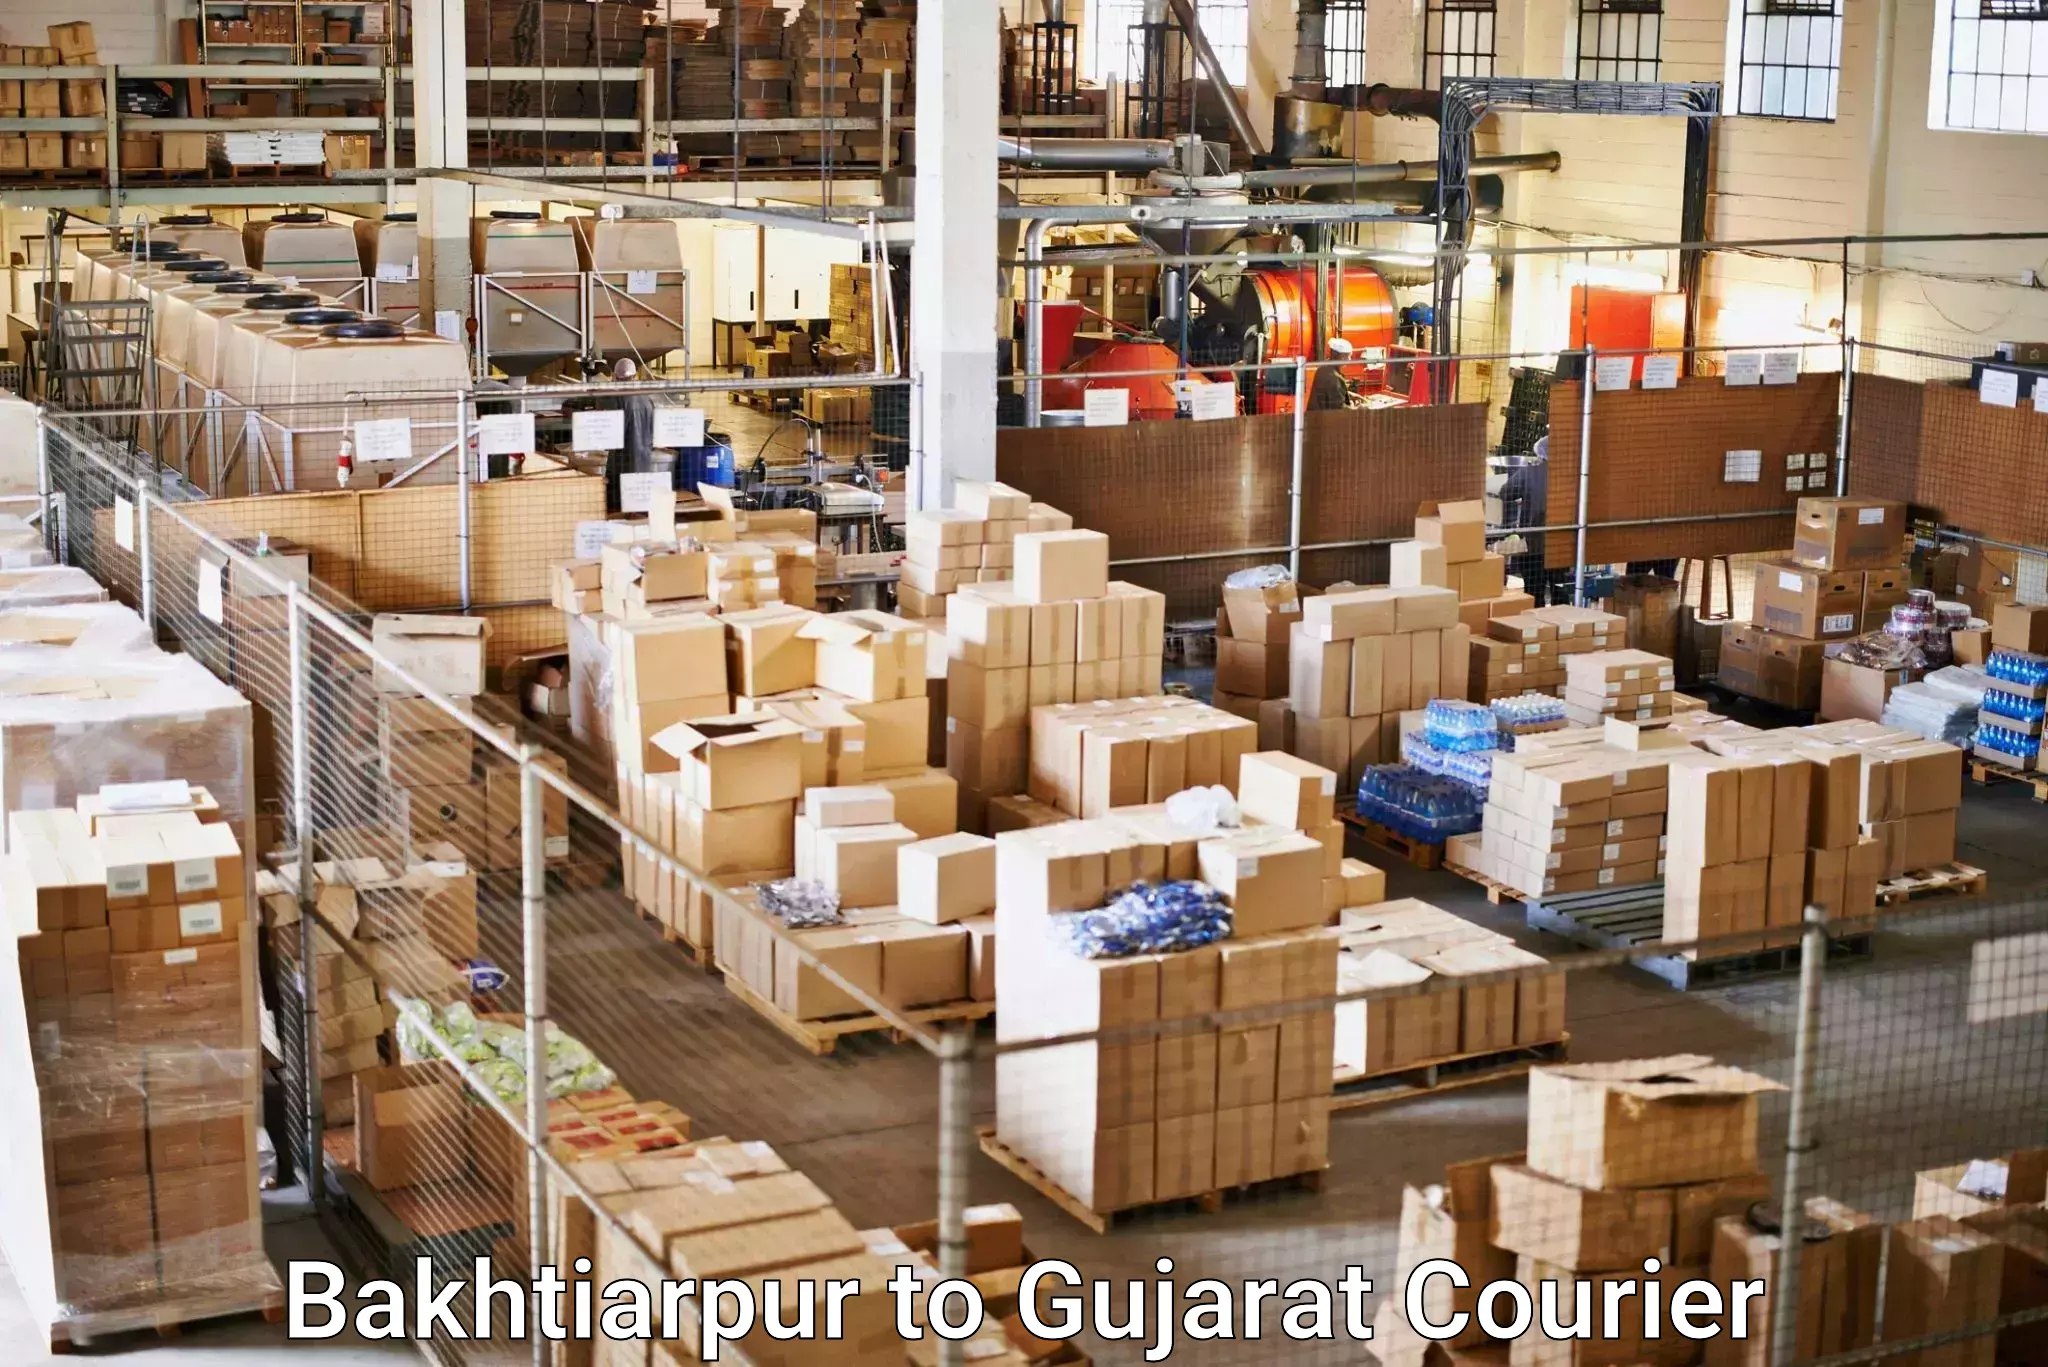 Diverse delivery methods Bakhtiarpur to Rapar